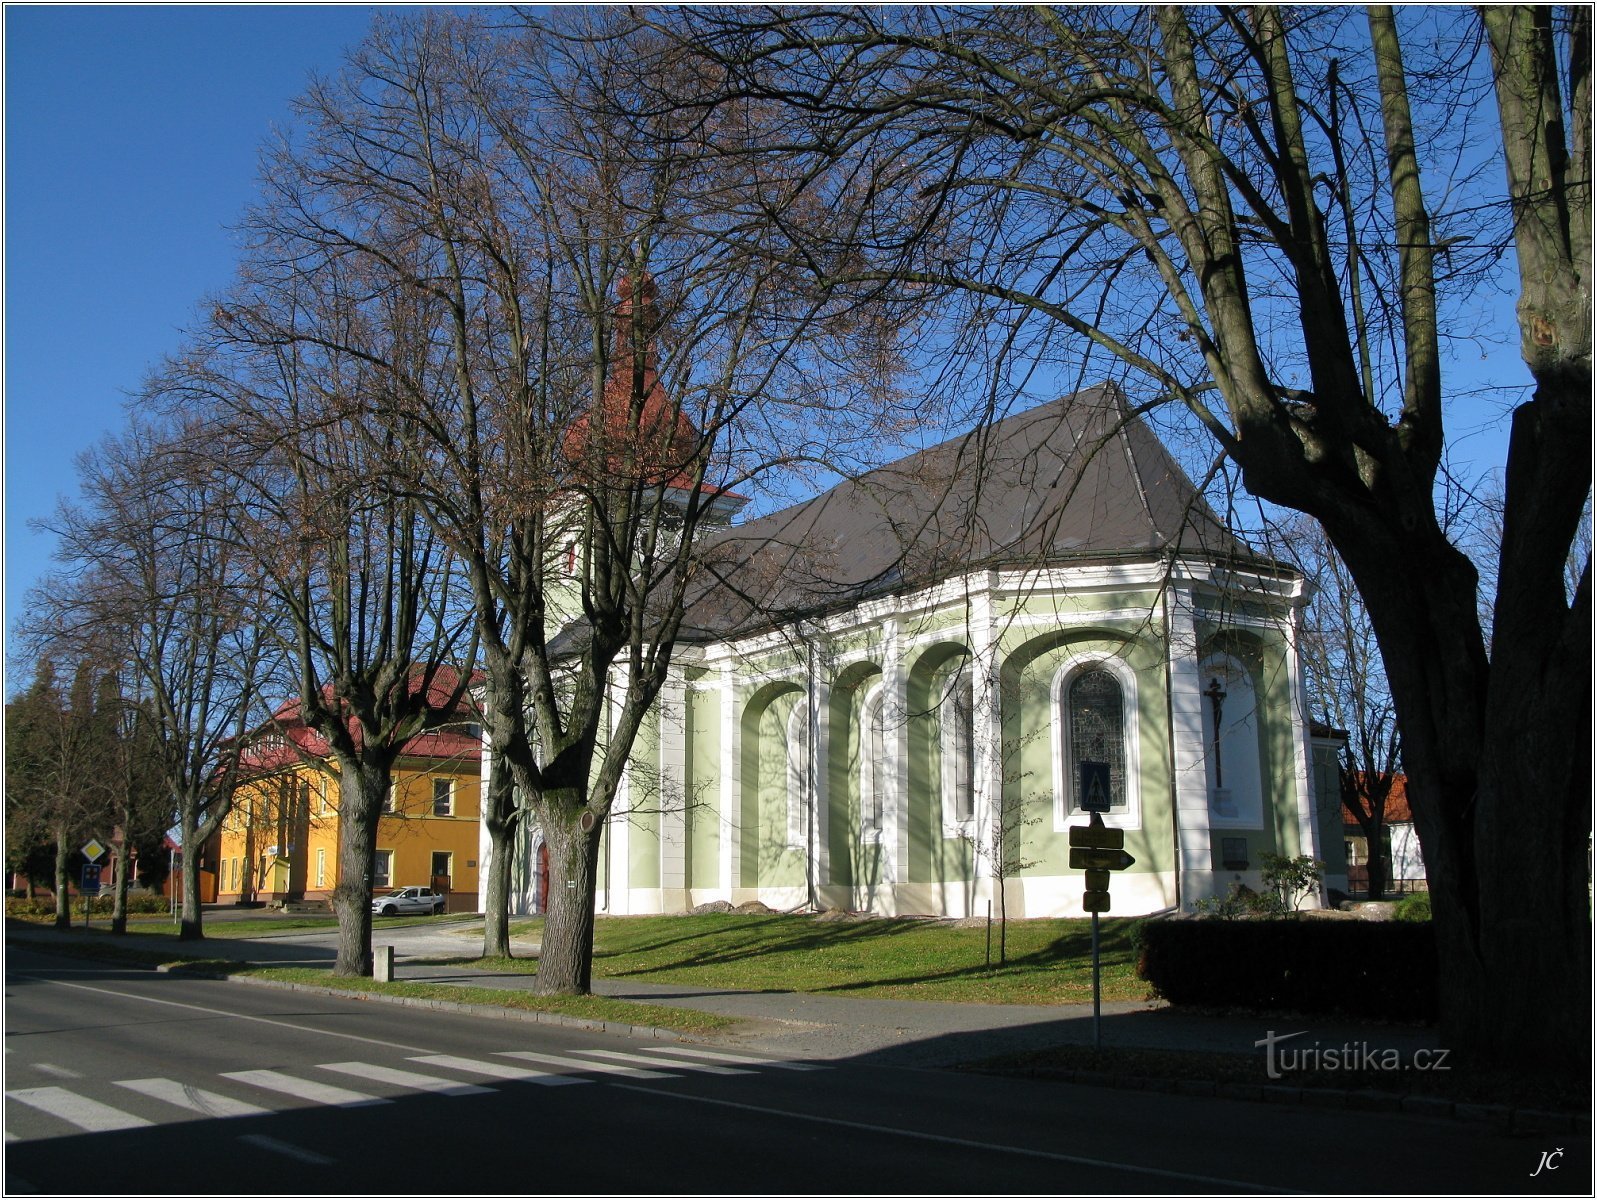 3-kirke på pladsen i Seč